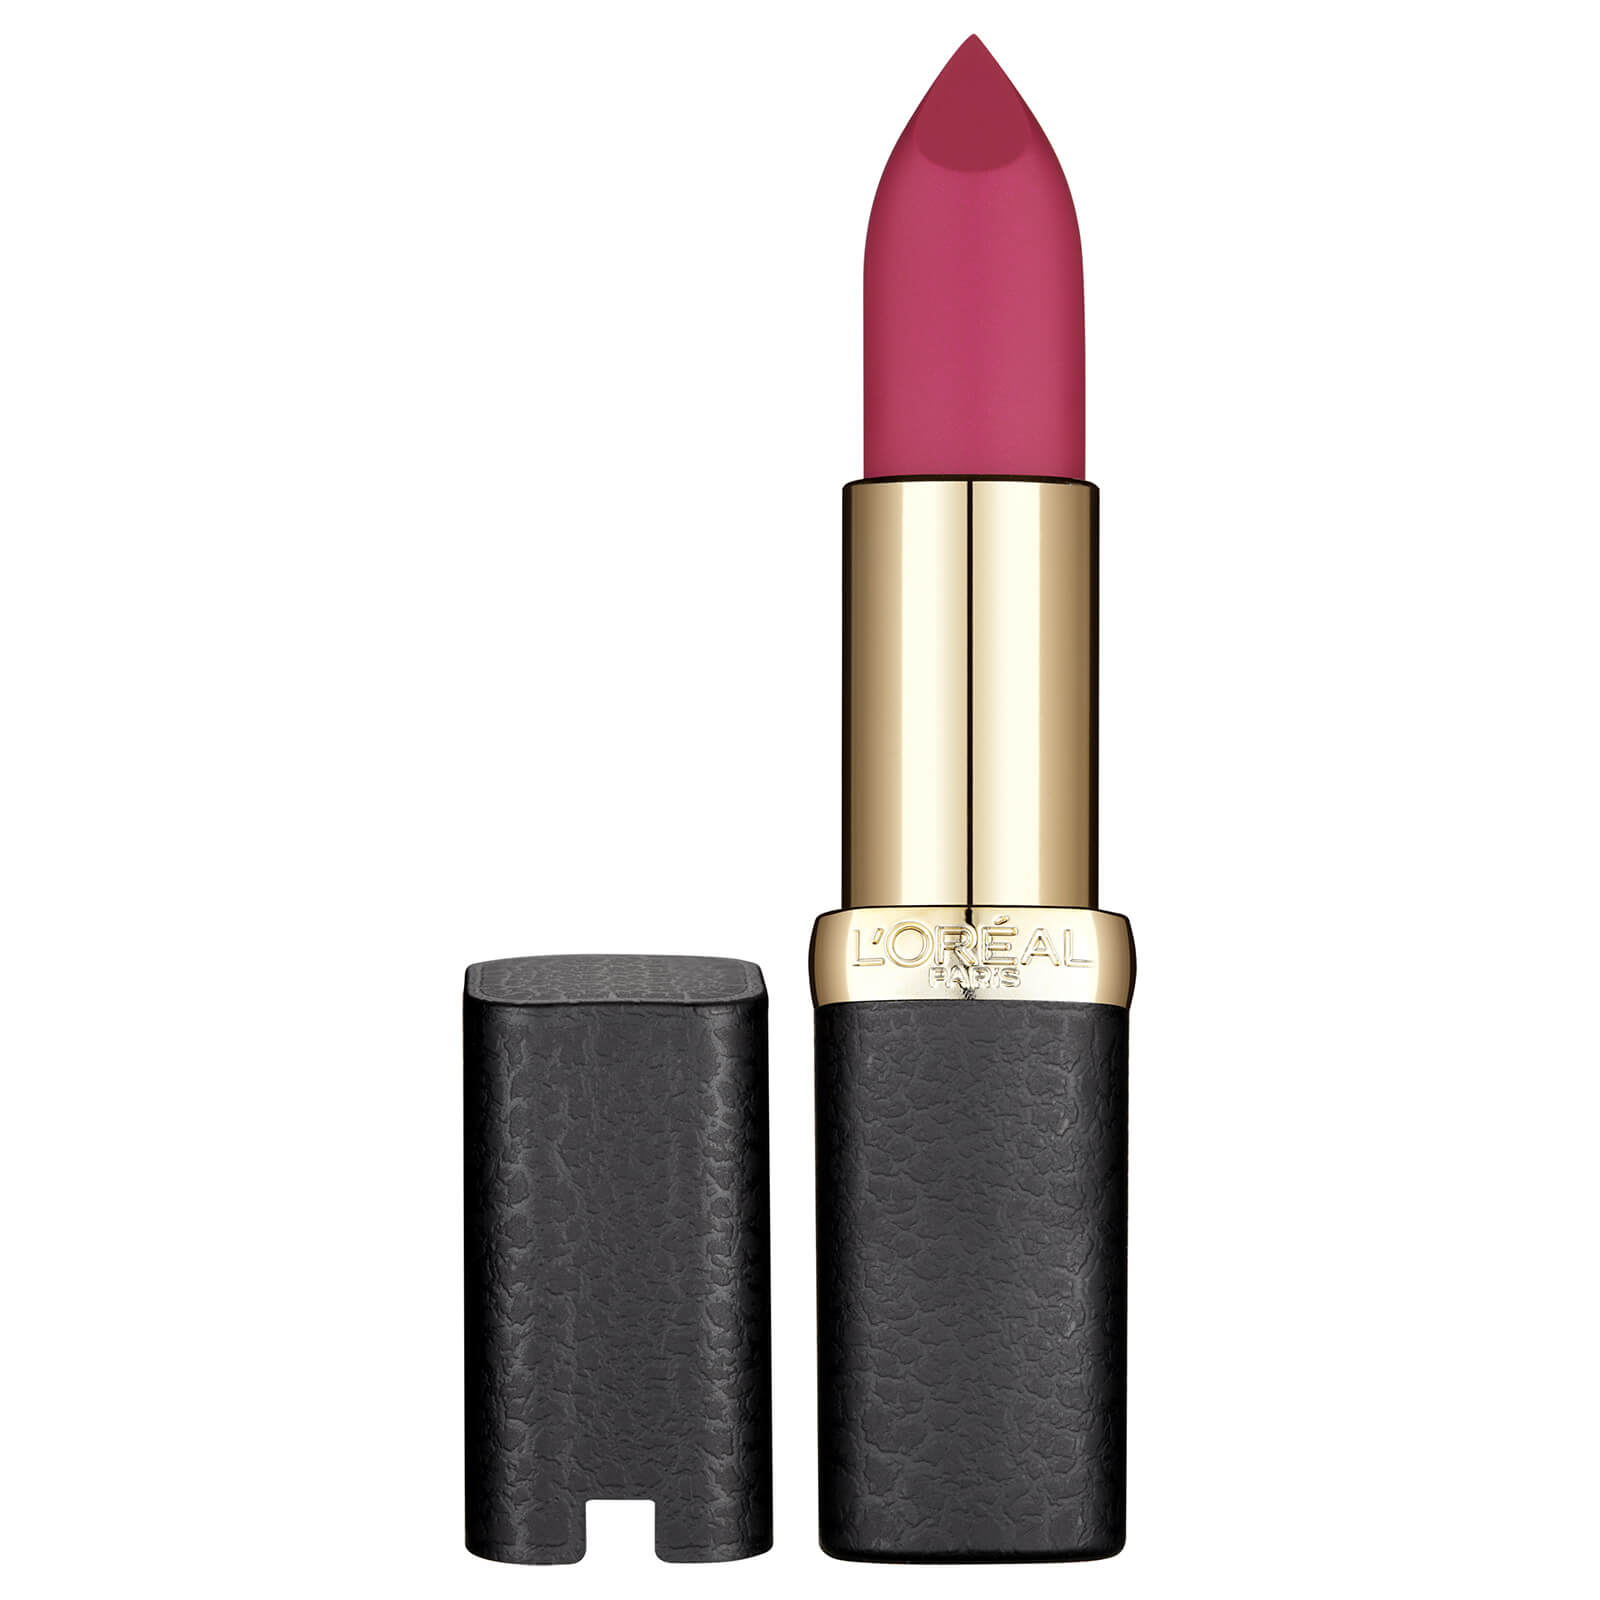 L`Oréal Paris Color Riche Matte Addiction Lipstick 4.8g (Various Shades) – 463 Plum Tuxedo lookfantastic.com imagine